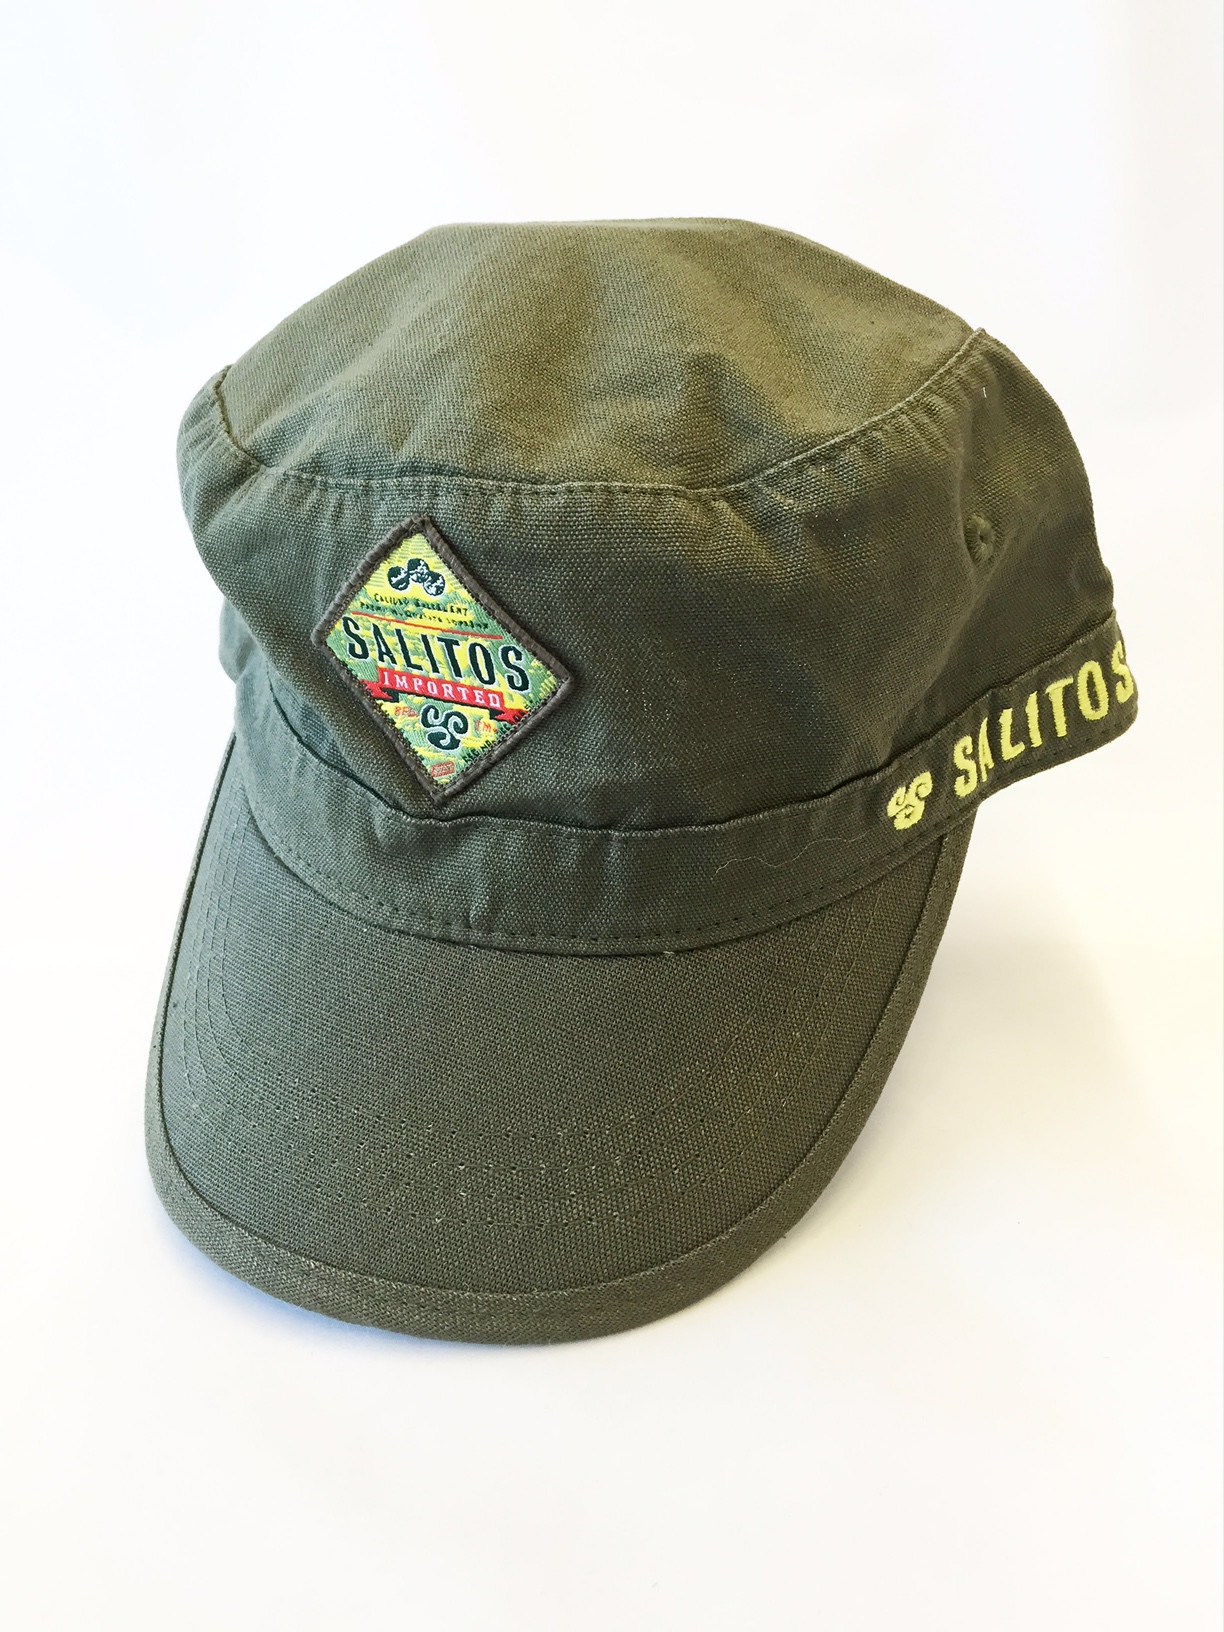 Salitos Kappe / Basecap / Military Cap